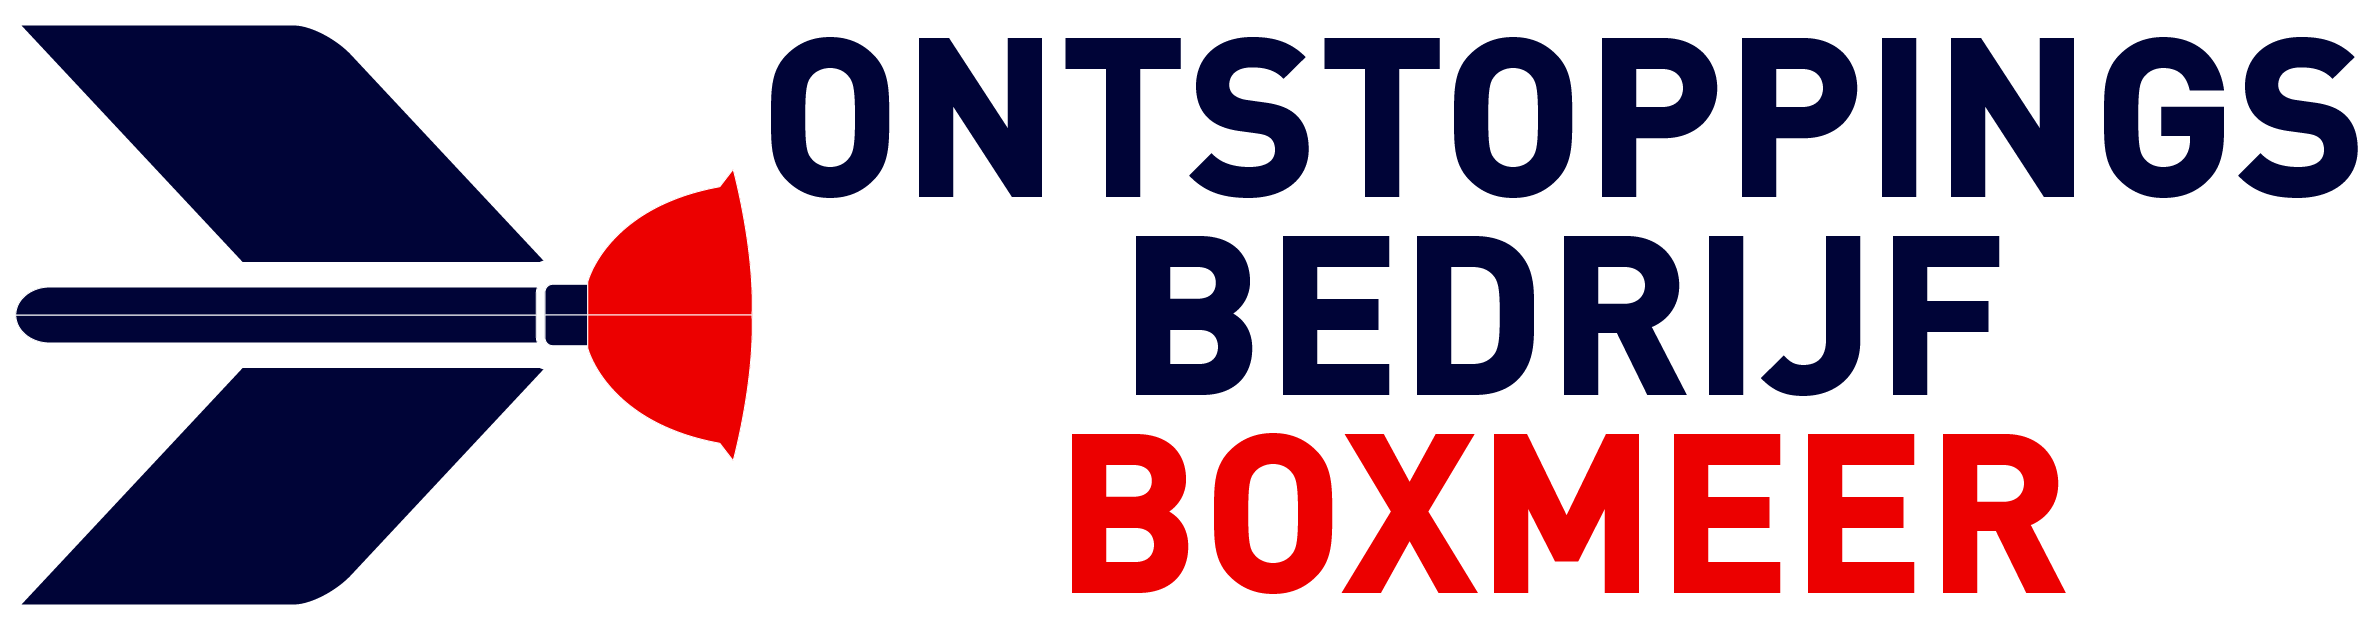 Ontstoppingsbedrijf Boxmeer logo